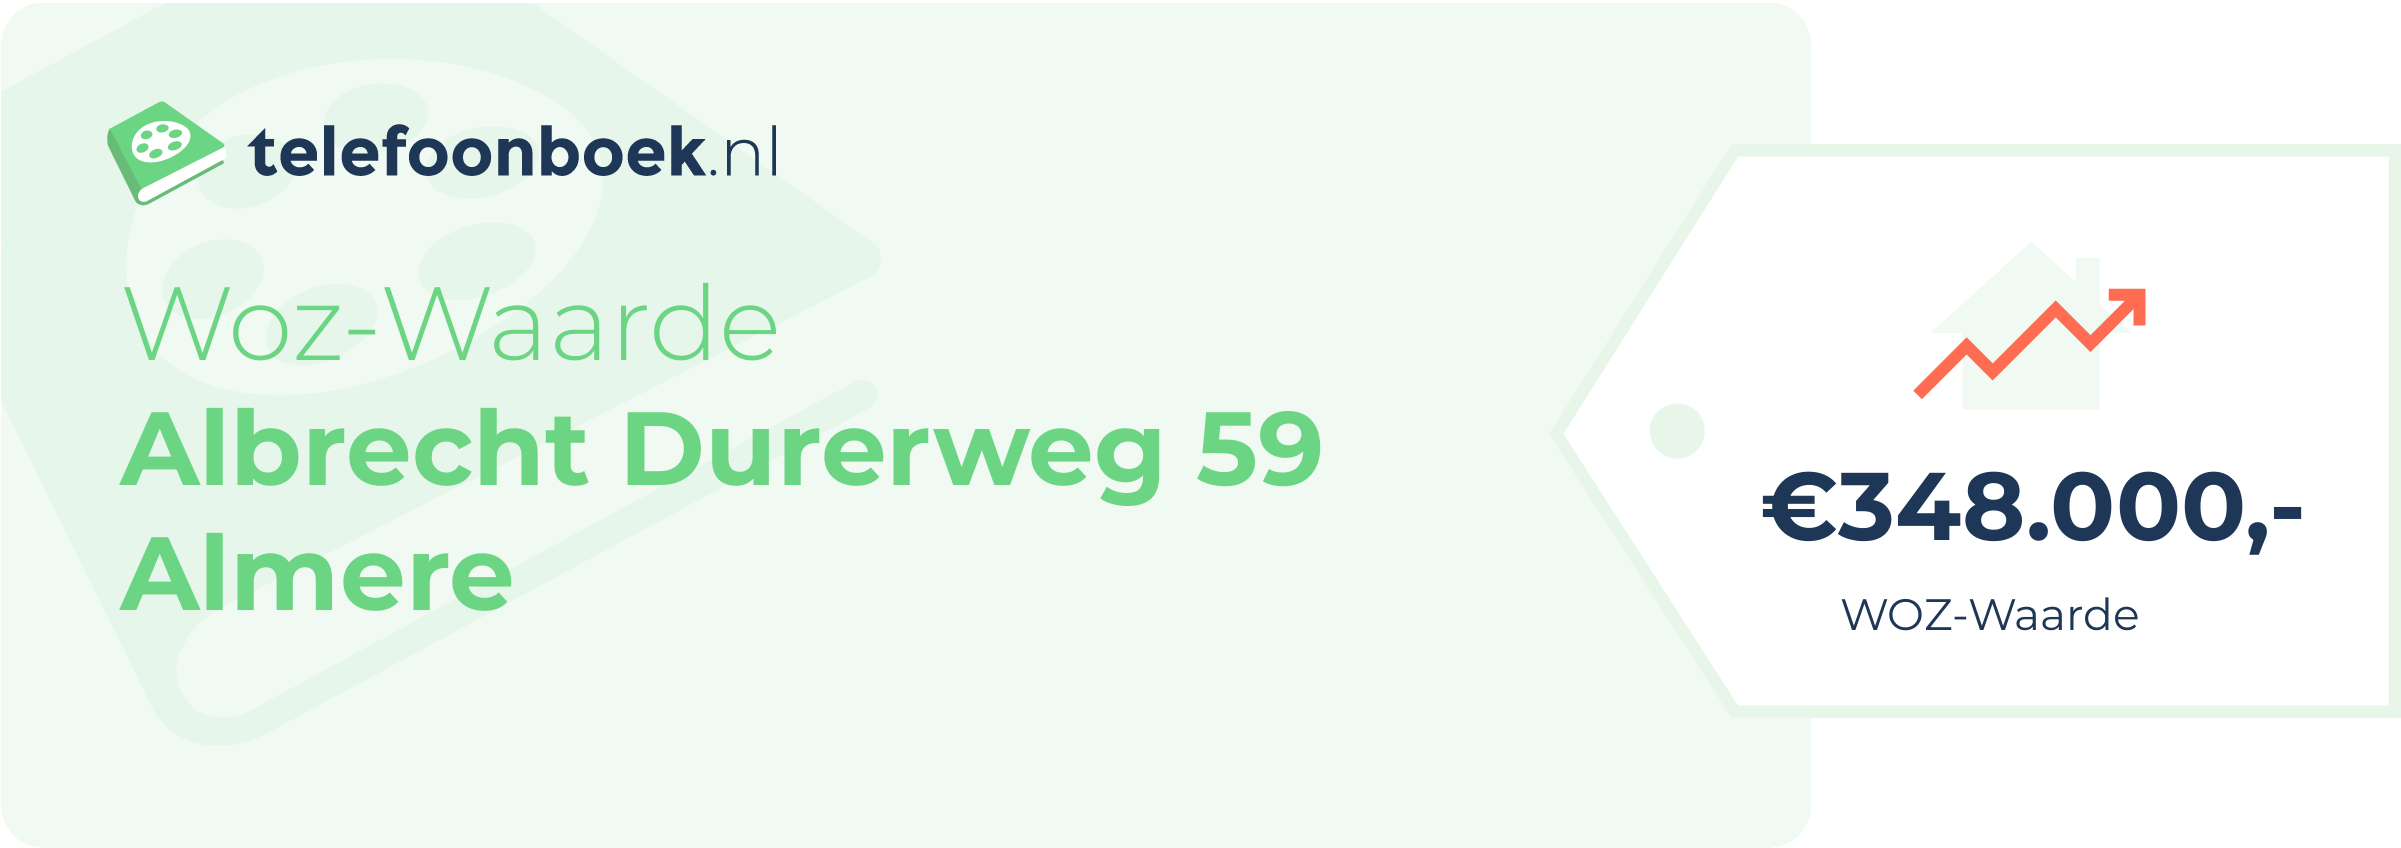 WOZ-waarde Albrecht Durerweg 59 Almere